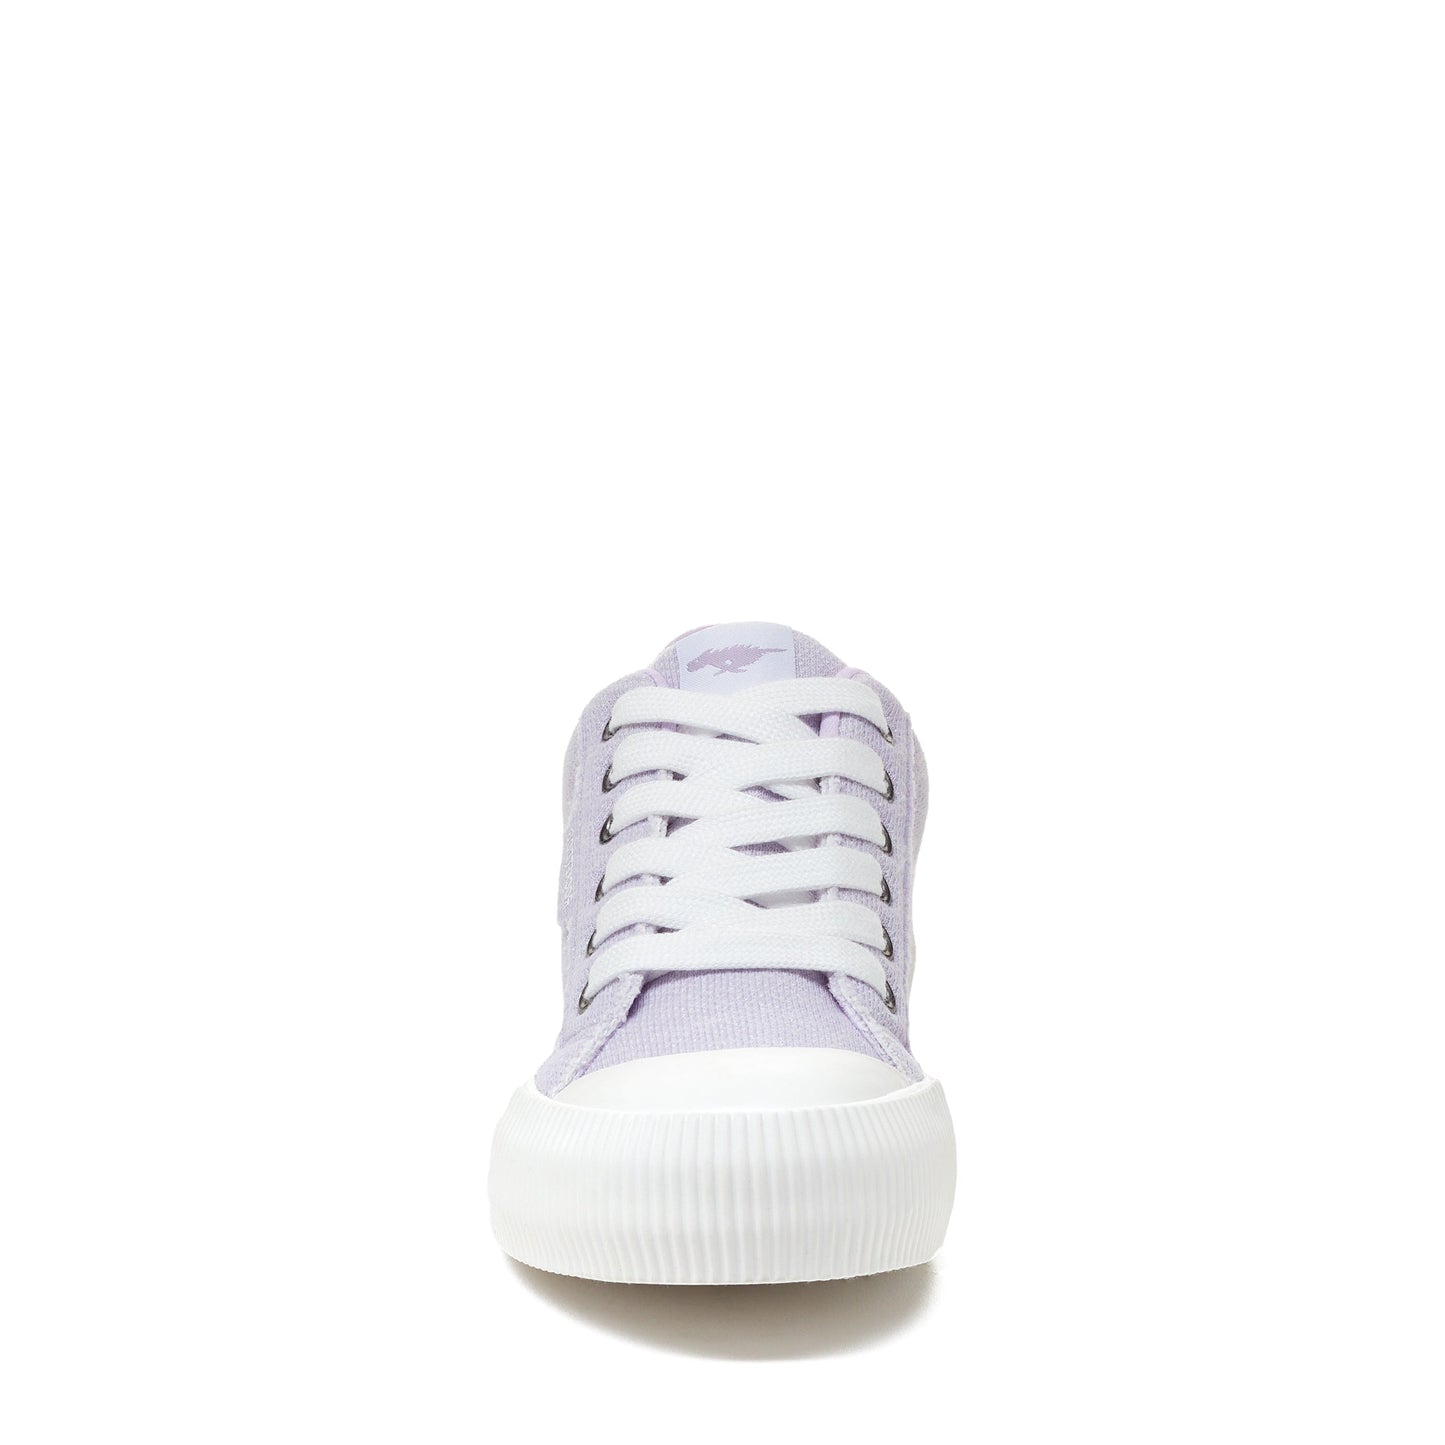 Rocket Dog® Women's Cheery Light Purple Sneaker